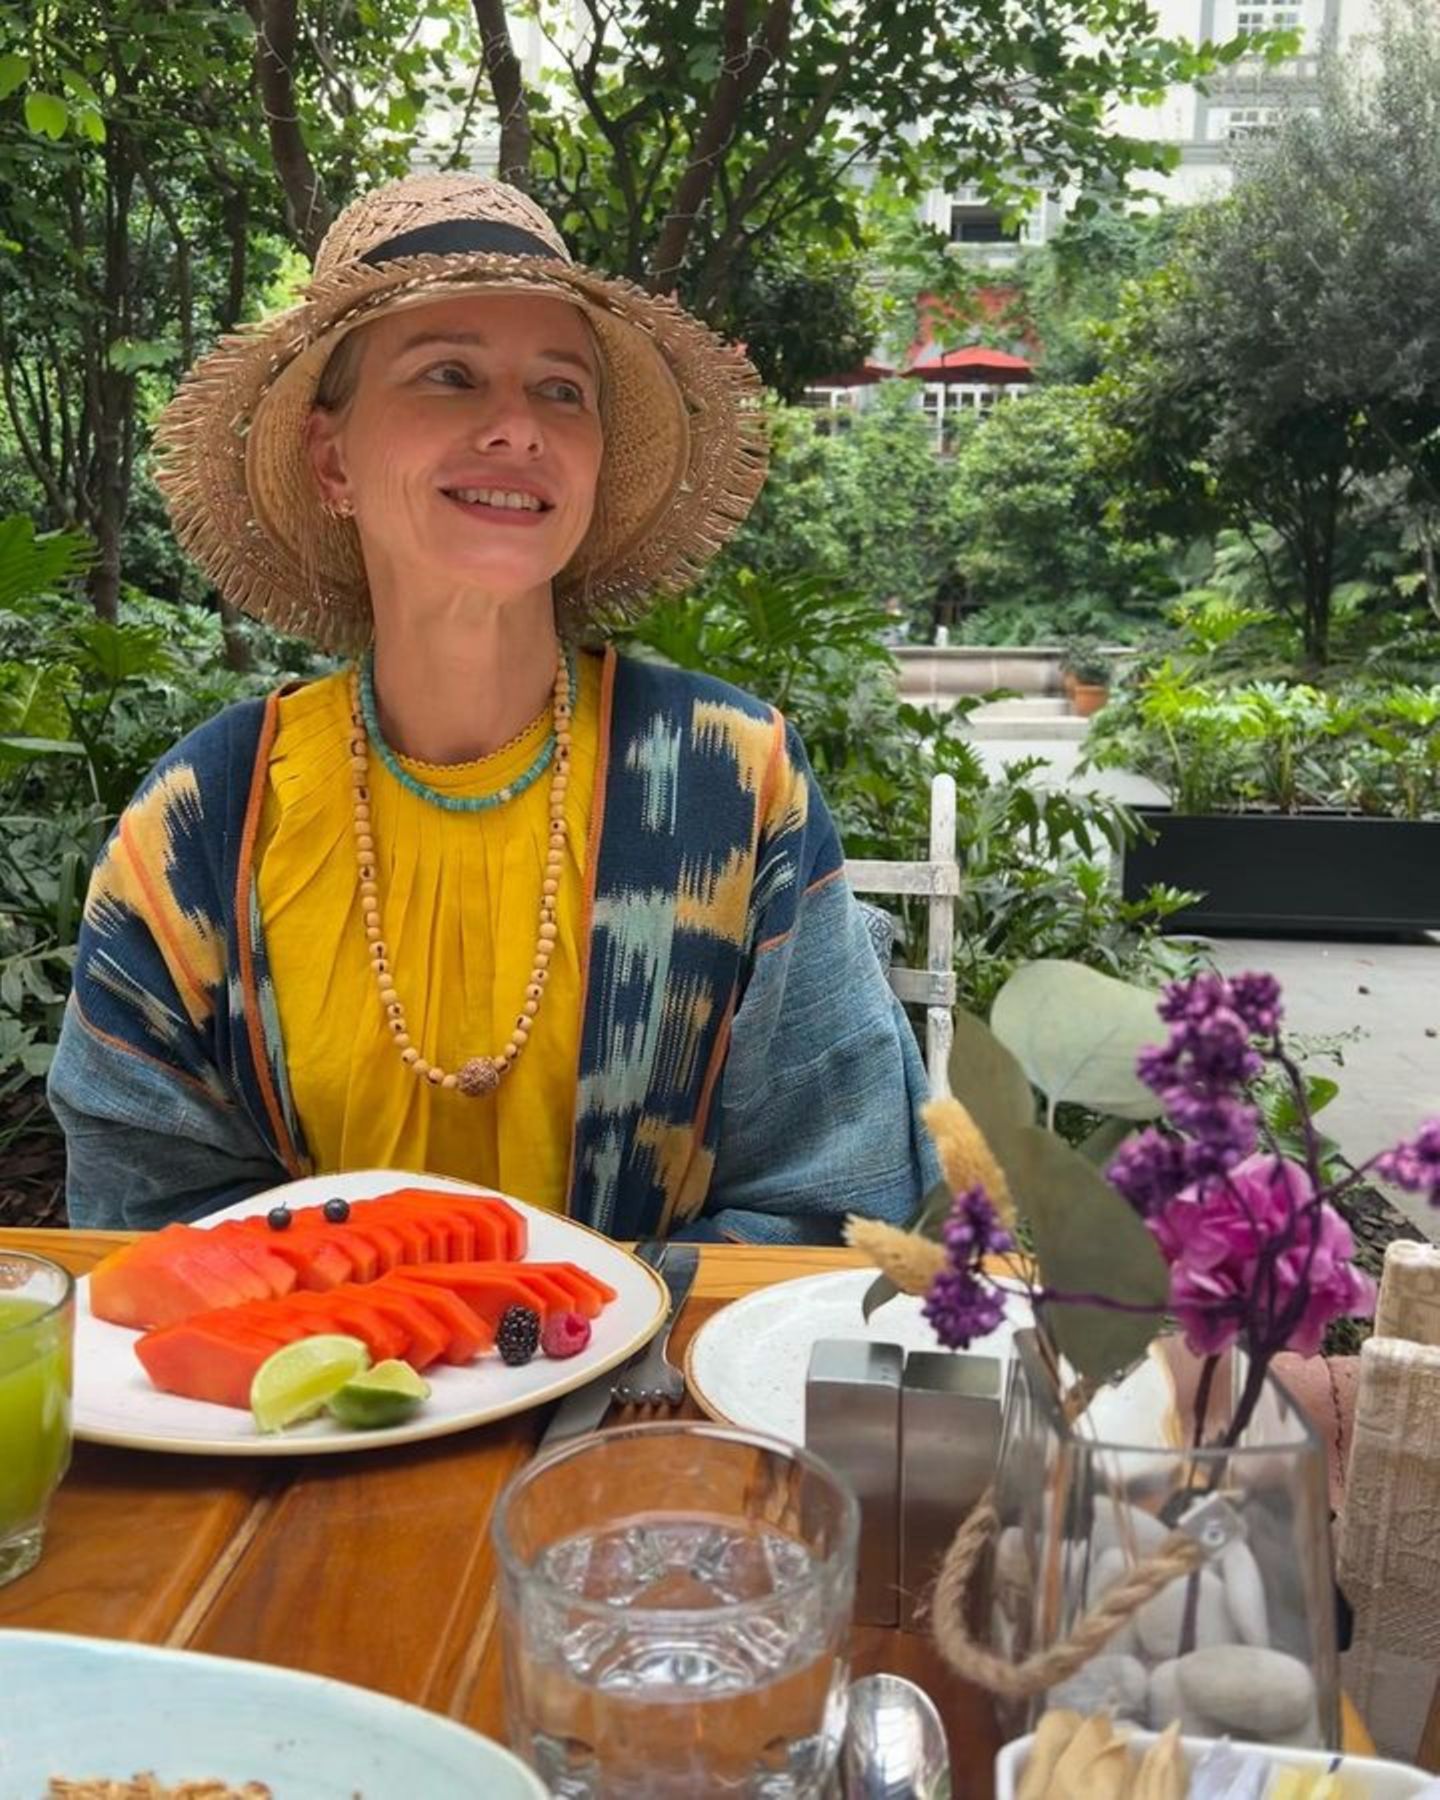 Naomi Watts startet gesund in den Tag, wie sie auf Instagram zeigt. In Mexiko gibt es für die Schauspielerin frische Papaya und einen grünen Saft zum Frühstück. Lecker! 